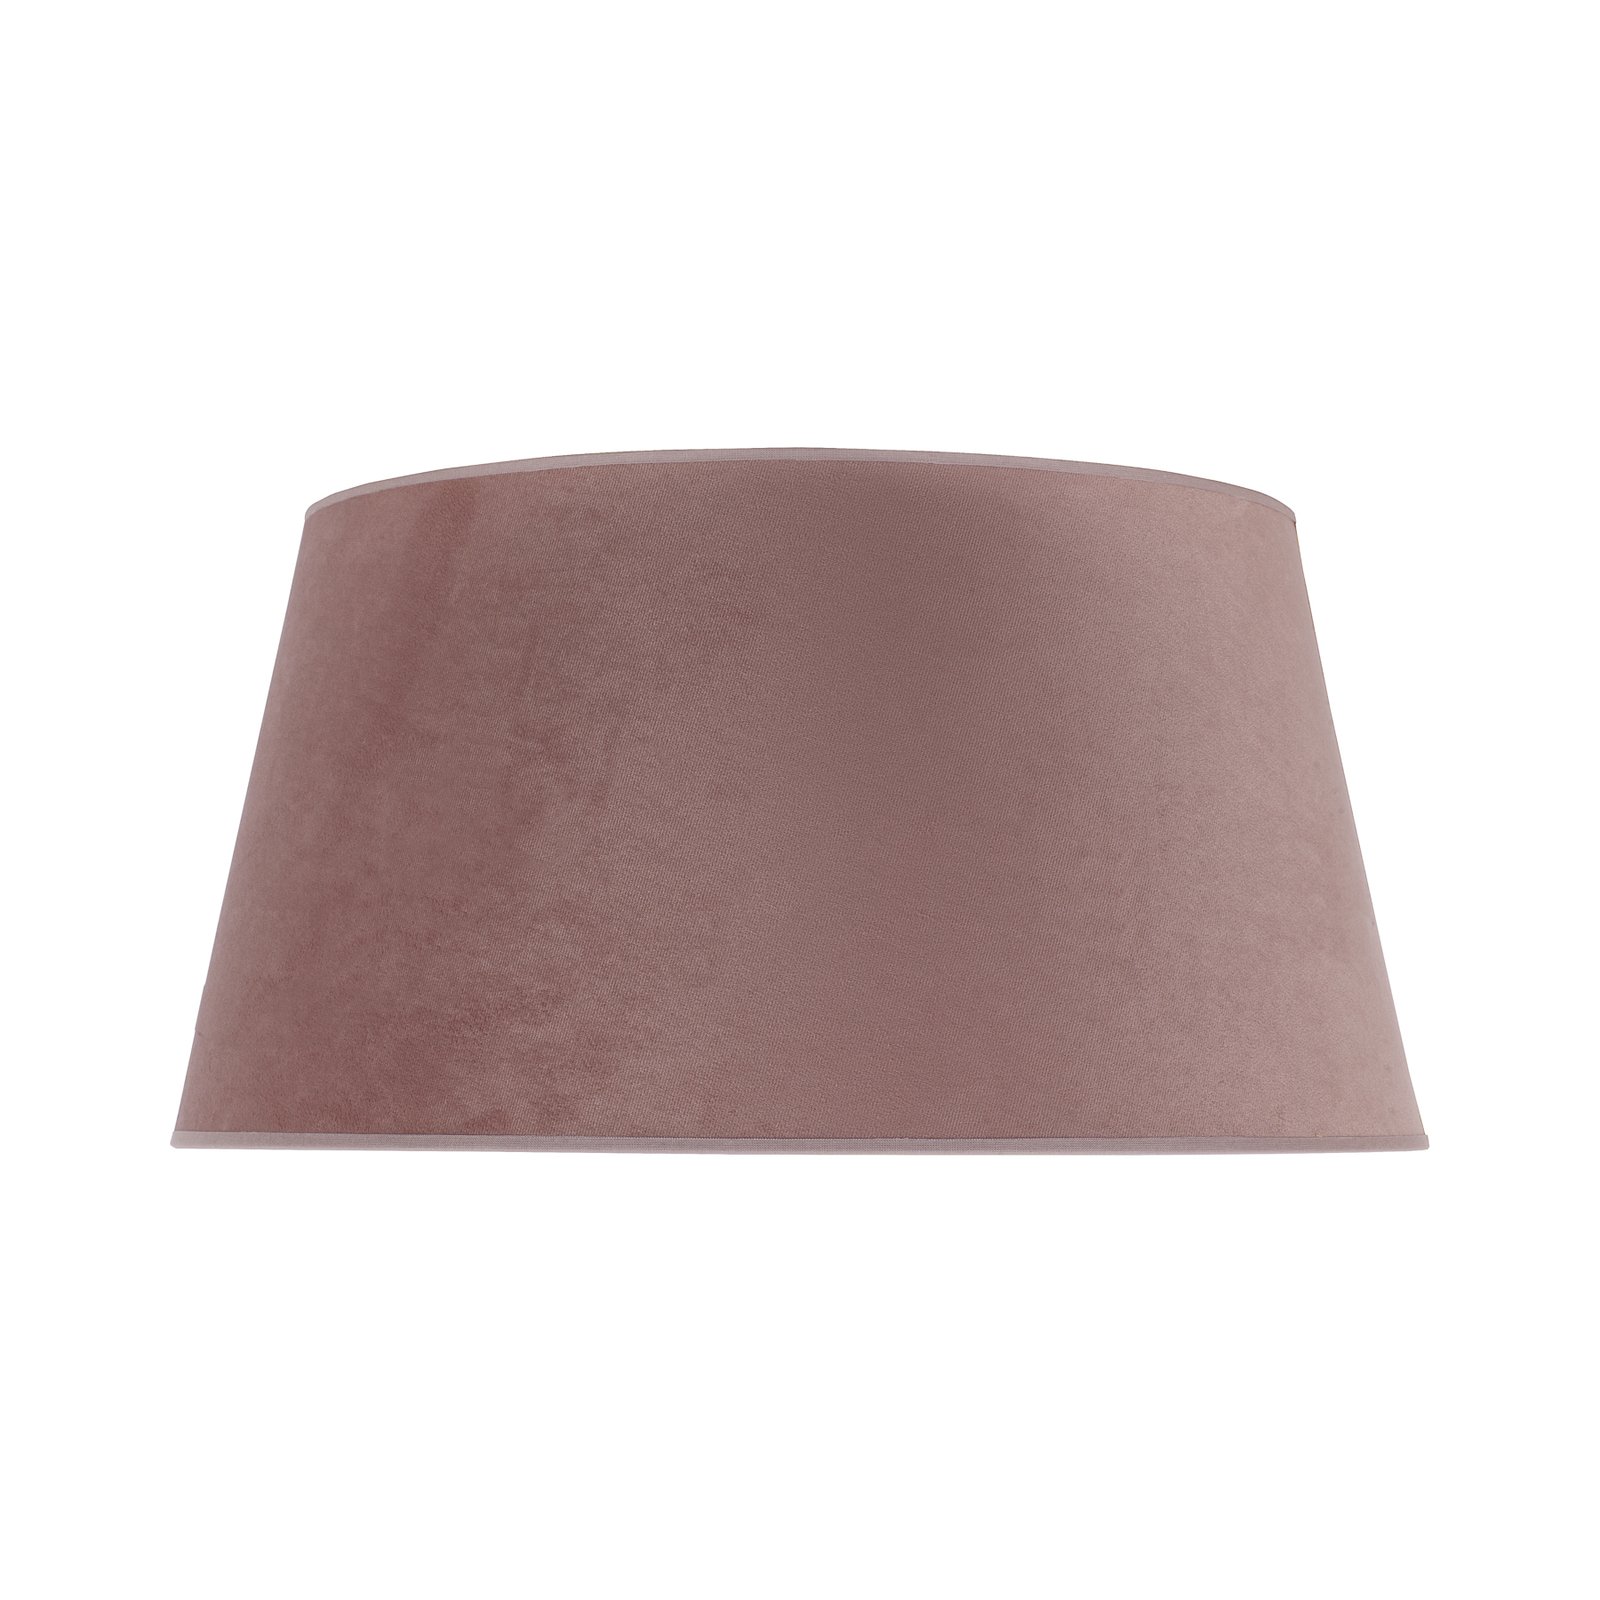 Cone lámpaernyő 22,5 cm magas, rózsaszín/arany